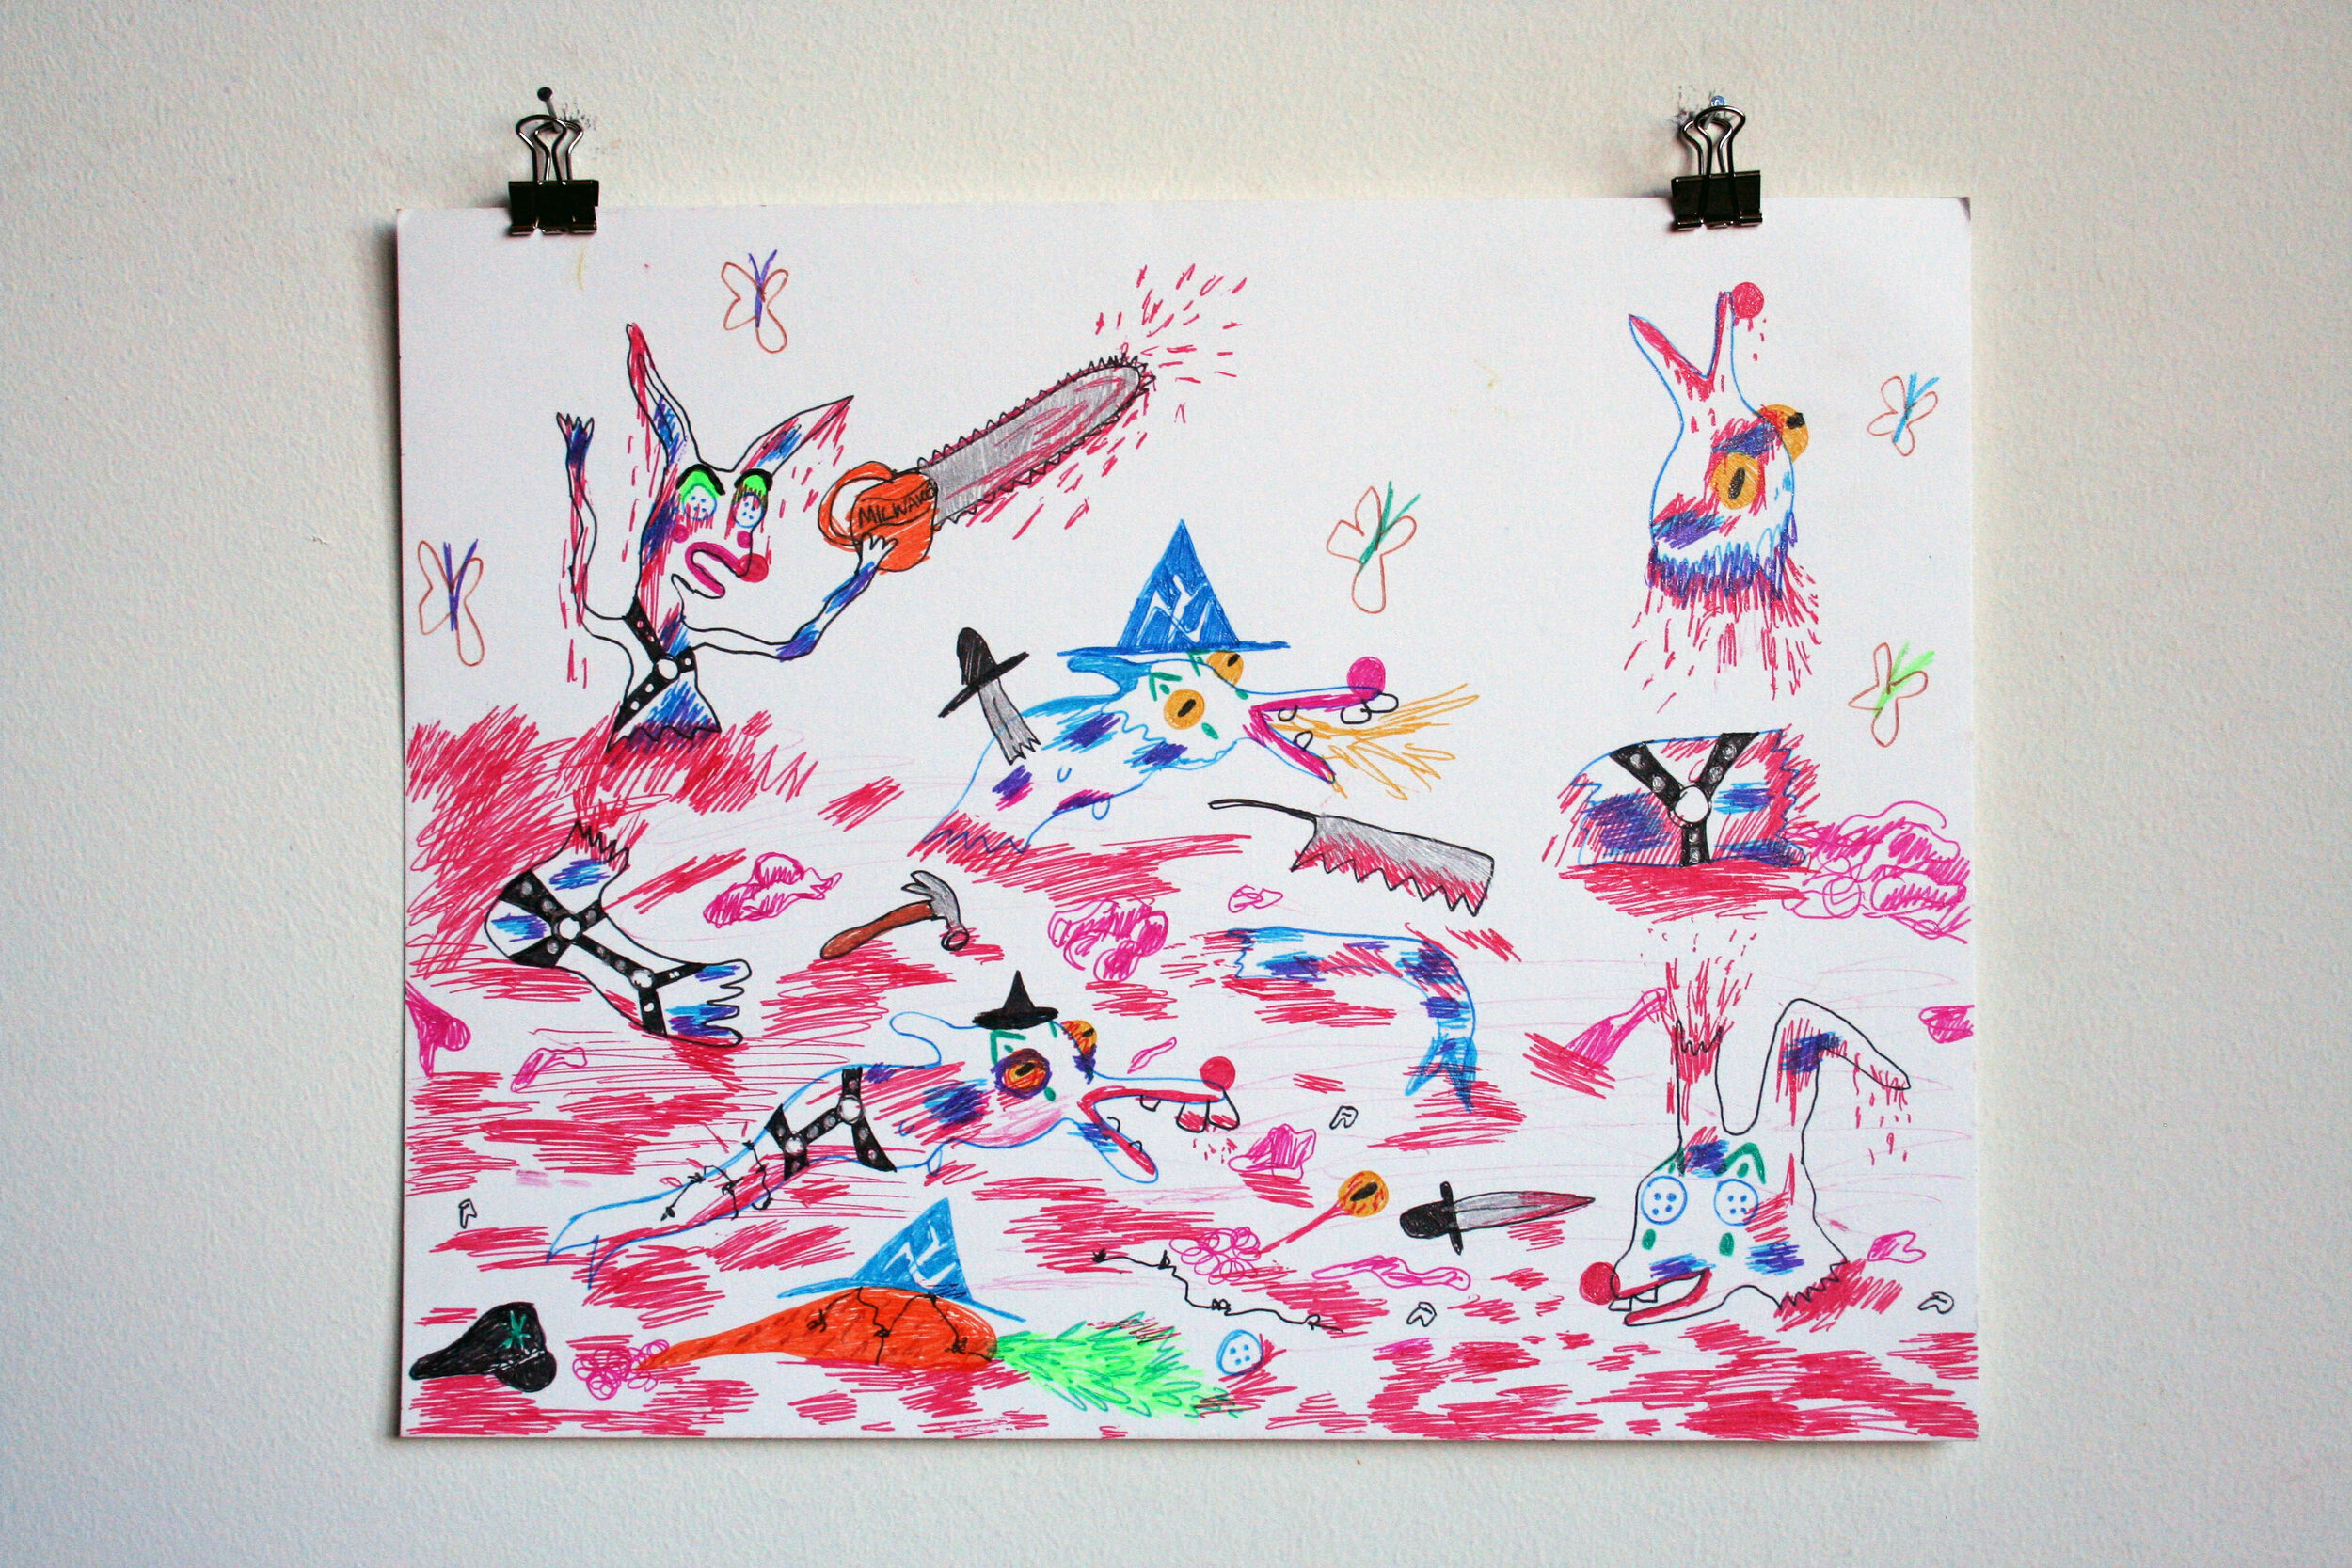  Mass Destruction, 2015  11 x 14 inches (27.94 x 35.56 cm.)  Sparkle gel pen on paper 